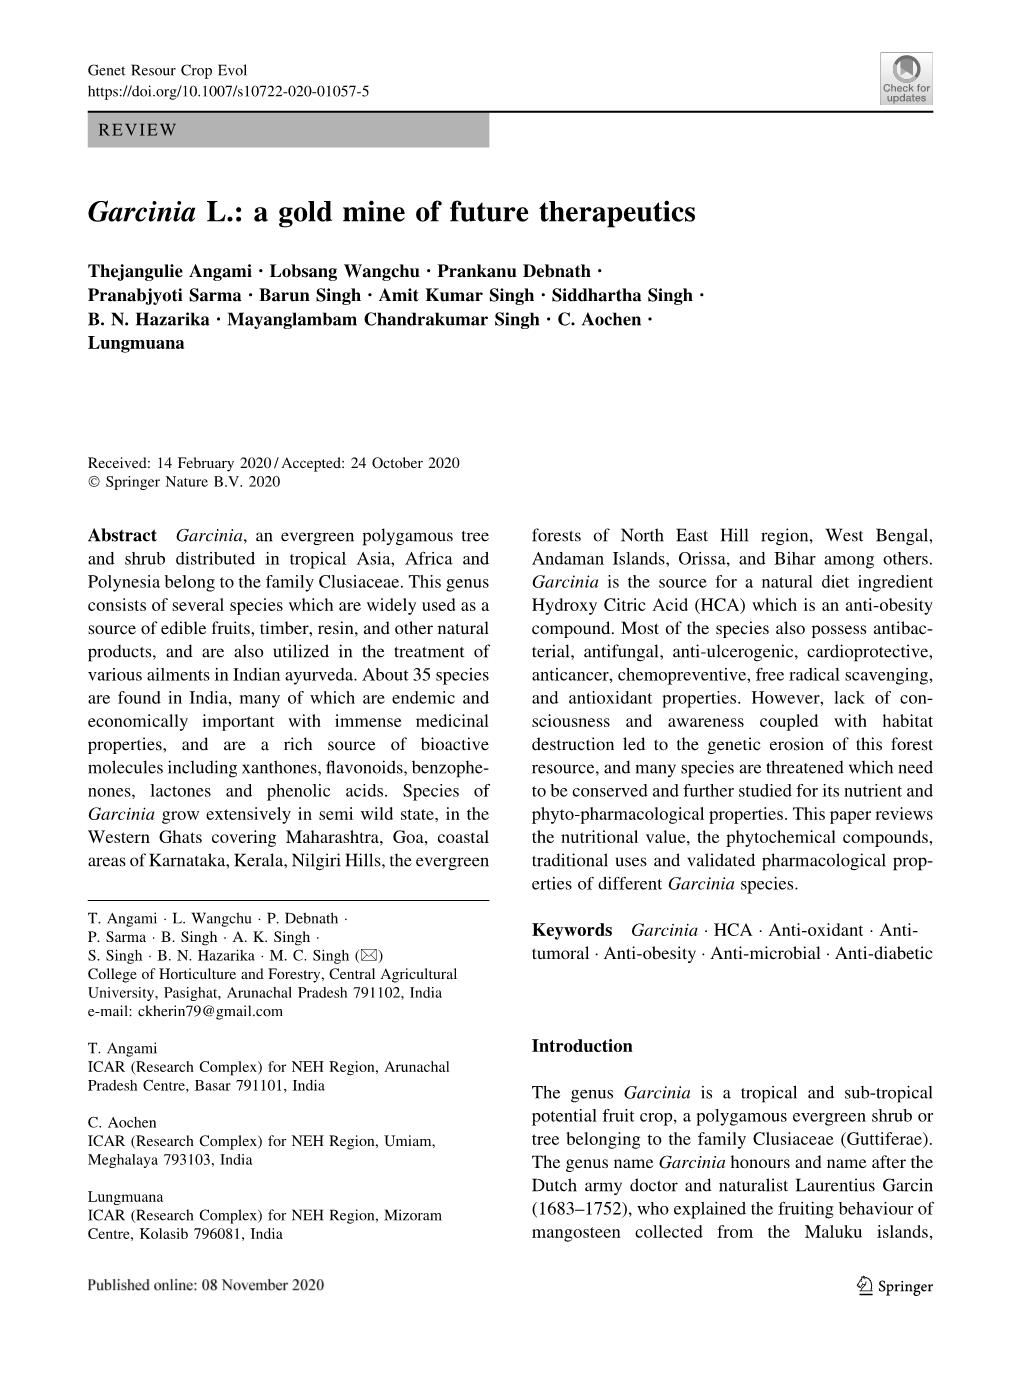 Garcinia L.: a Gold Mine of Future Therapeutics